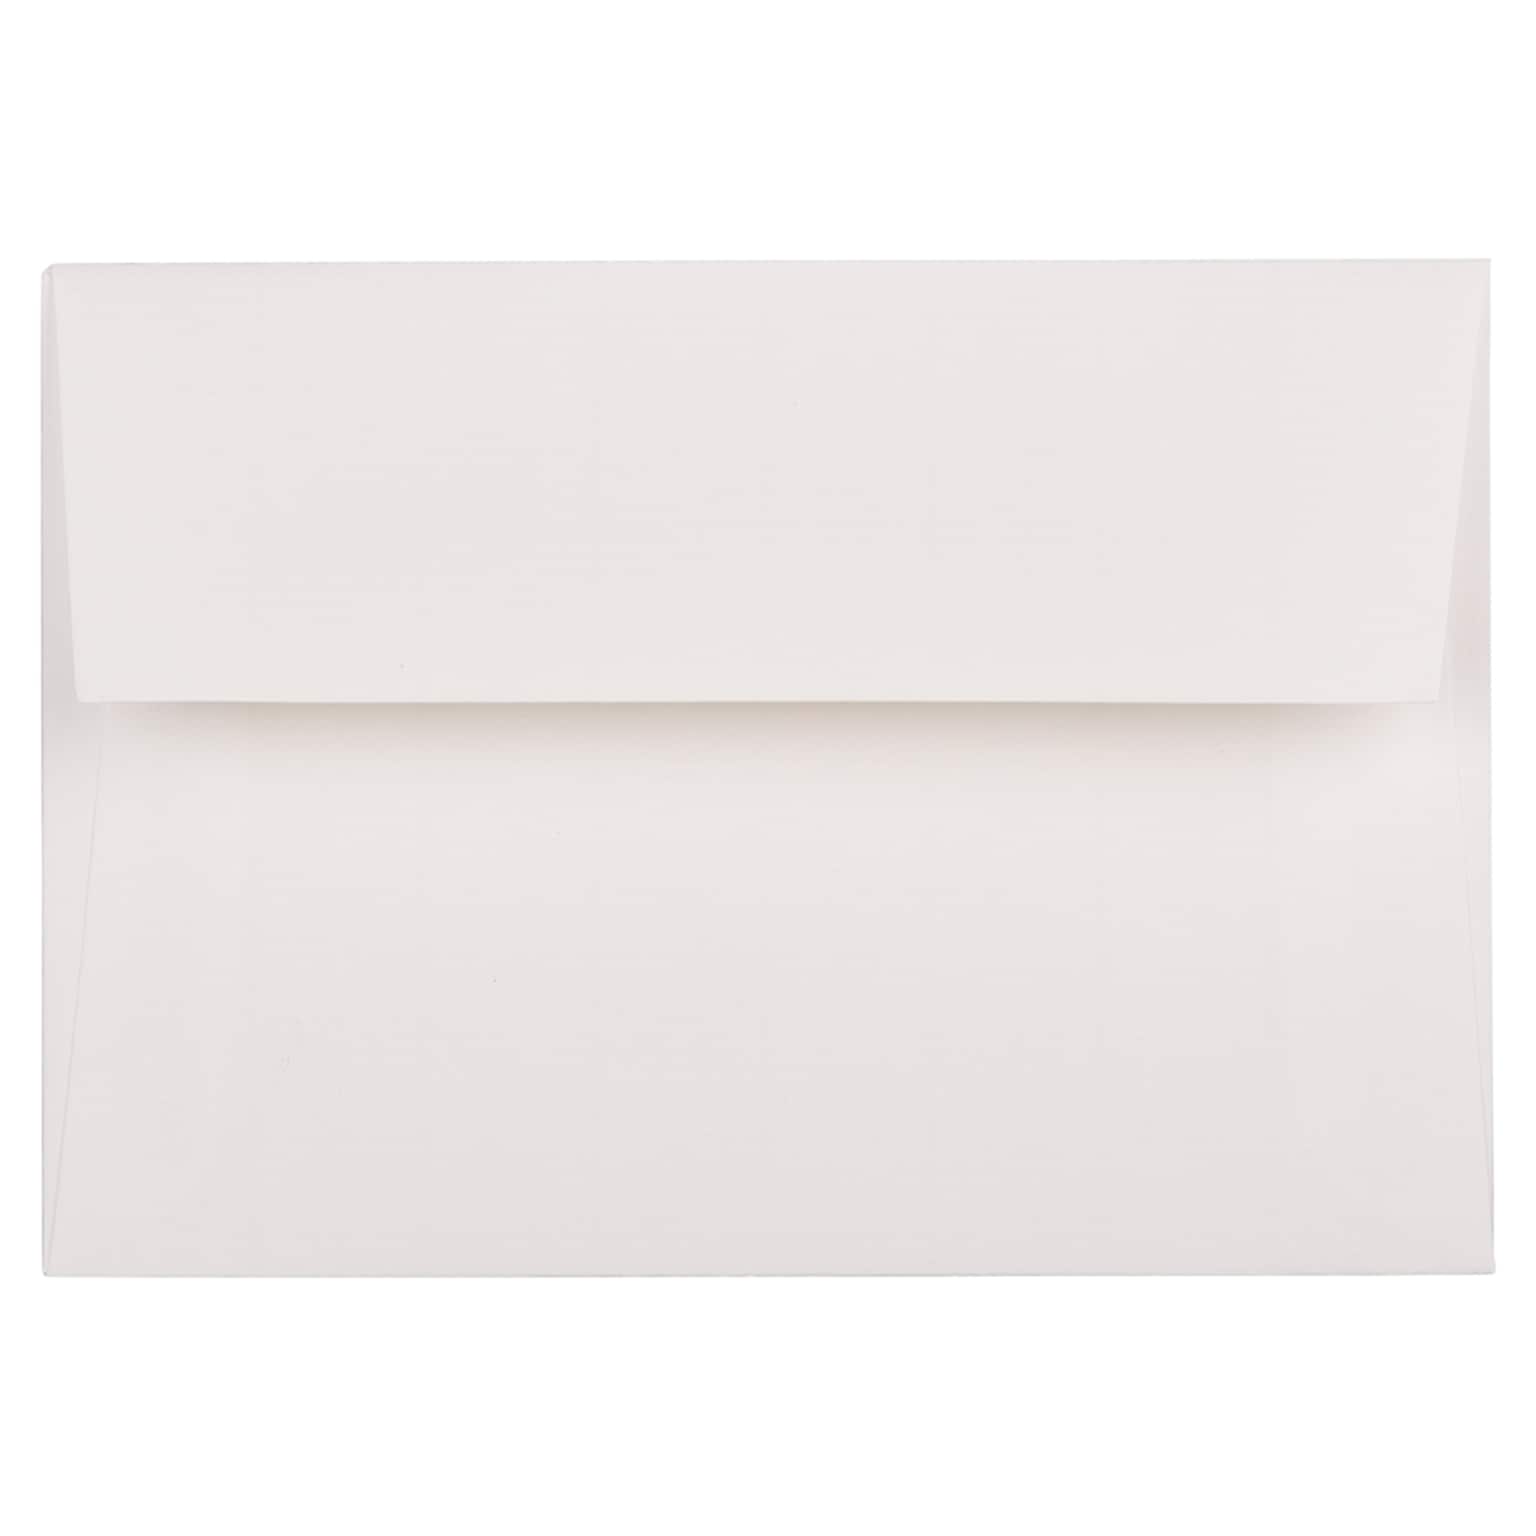 JAM Paper 4Bar A1 Strathmore Invitation Envelopes, 3.625 x 5.125, Bright White Laid, 25/Pack (900911330)